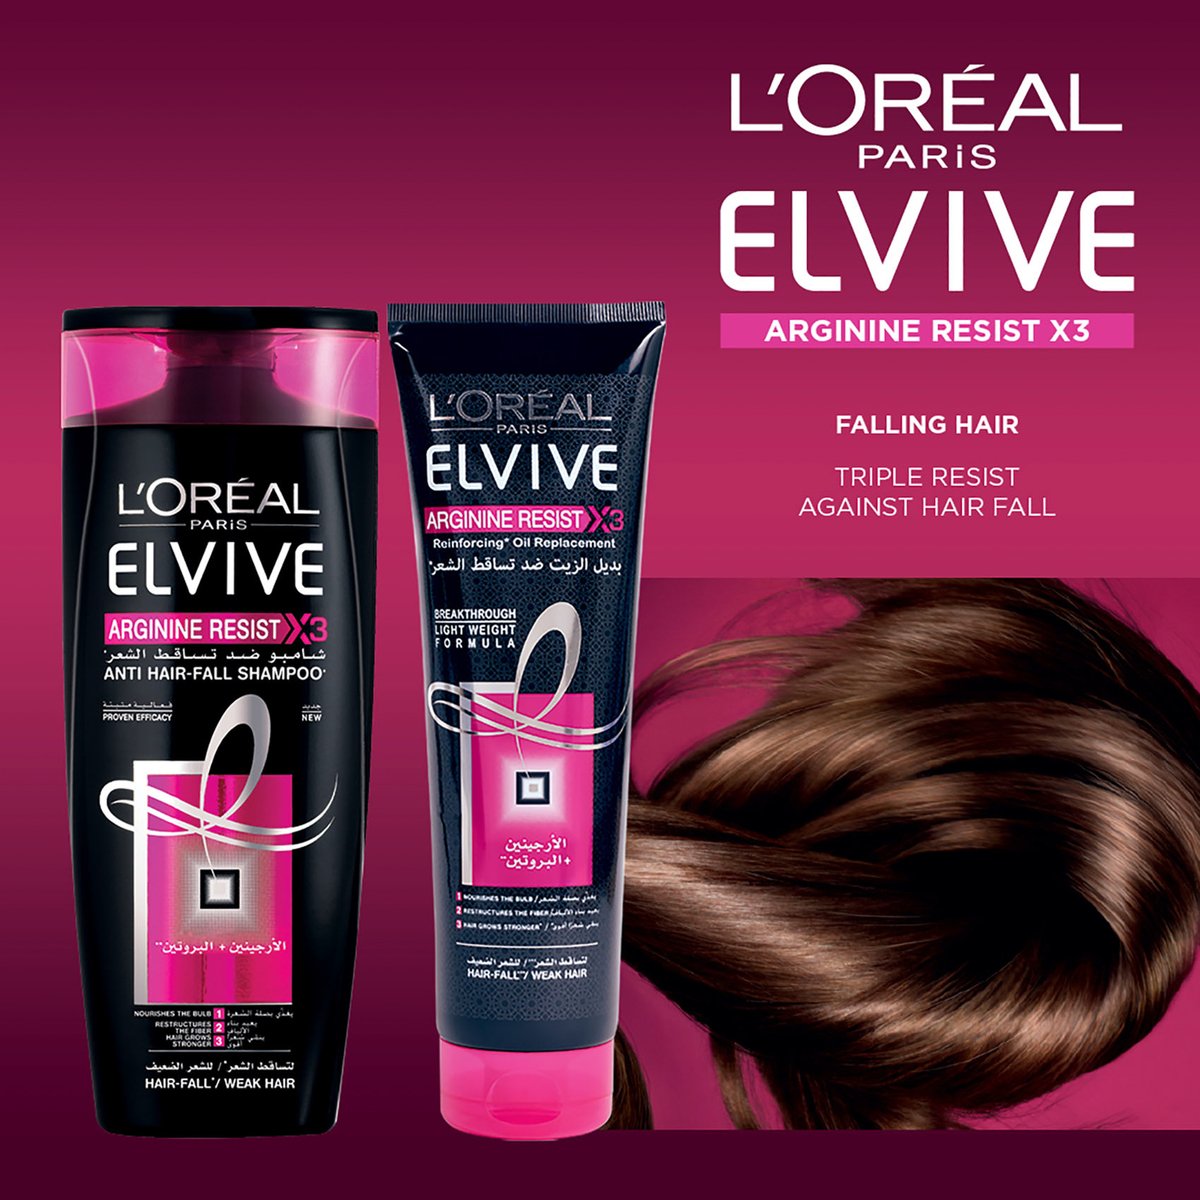 L'Oreal Paris Elvive Arginine Resist Anti Hair Fall Conditioner 400 ml